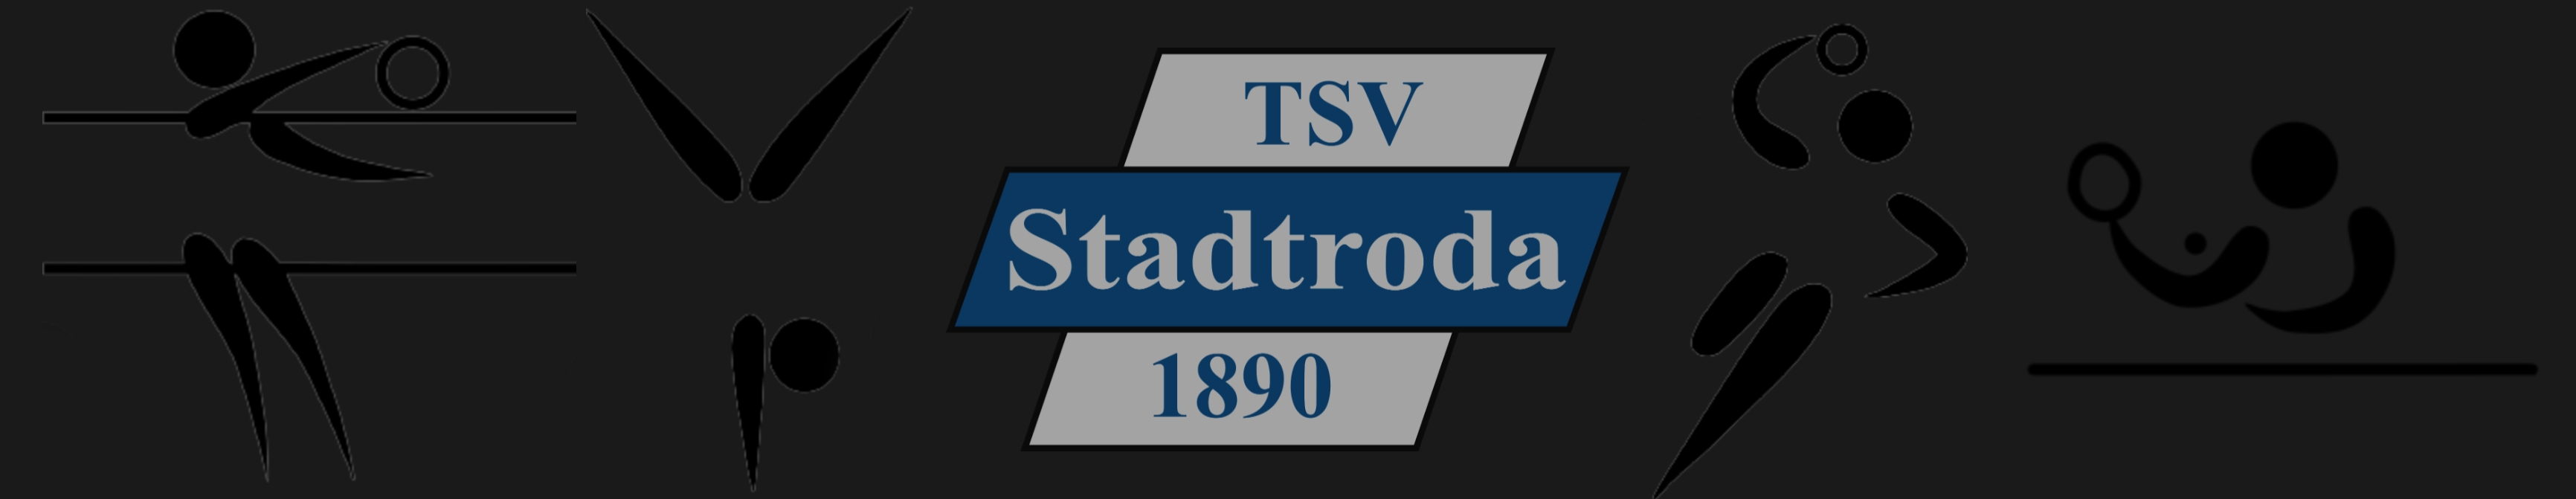 TSV Stadtroda